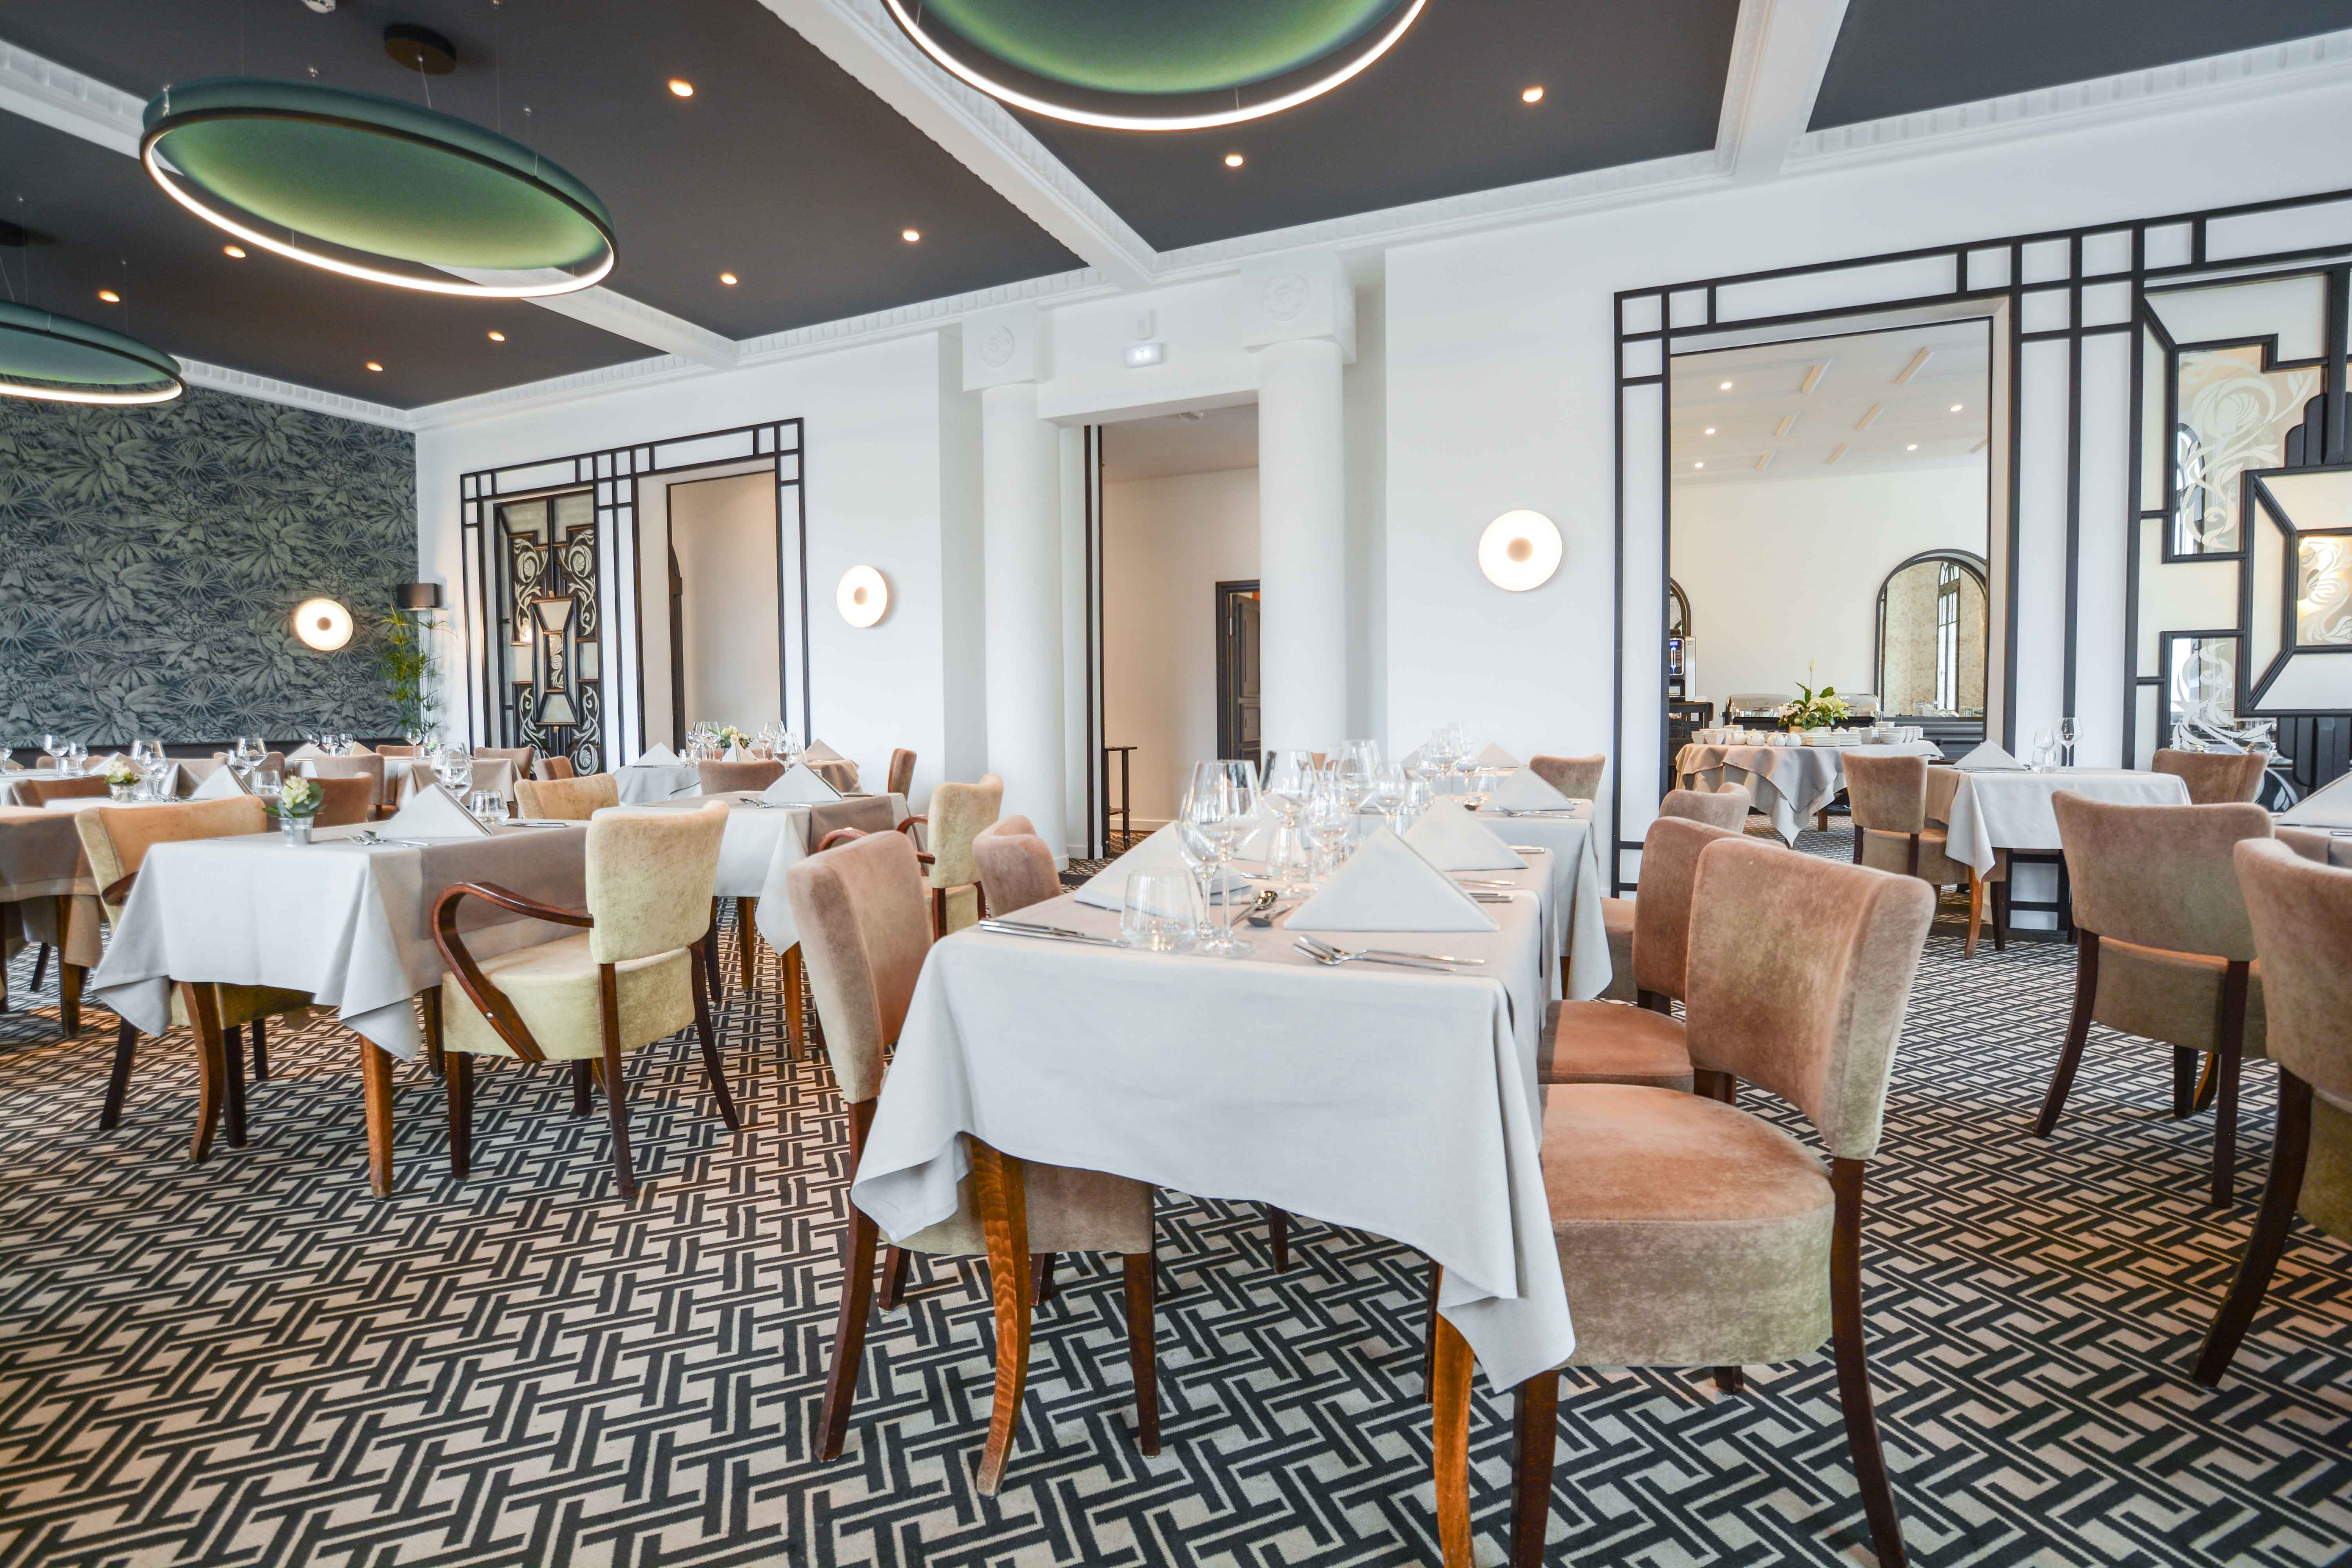 Restaurant-Golf-Hotel-Hiver-2019-Salle Infosnews-9 web